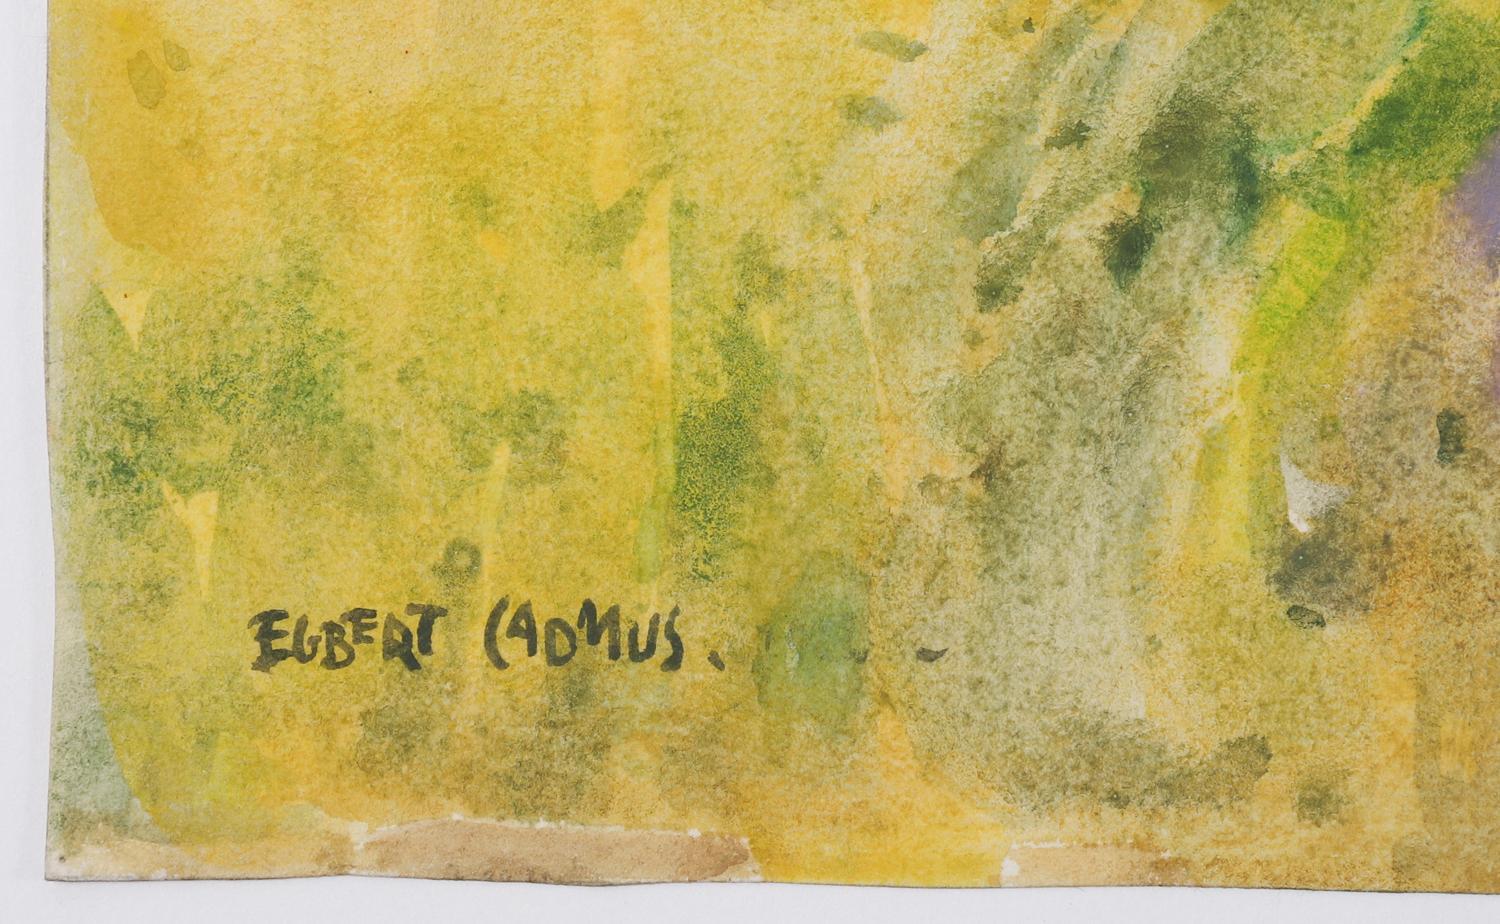 Aquarelle vintage sur papier d'Egbert Cadmus (Américain, 1868-1939) représentant un paysage du New Jersey avec une clôture à claire-voie. Aquarelliste accompli, surtout connu comme le père de l'artiste Paul Cadmus. Il est devenu membre des artistes